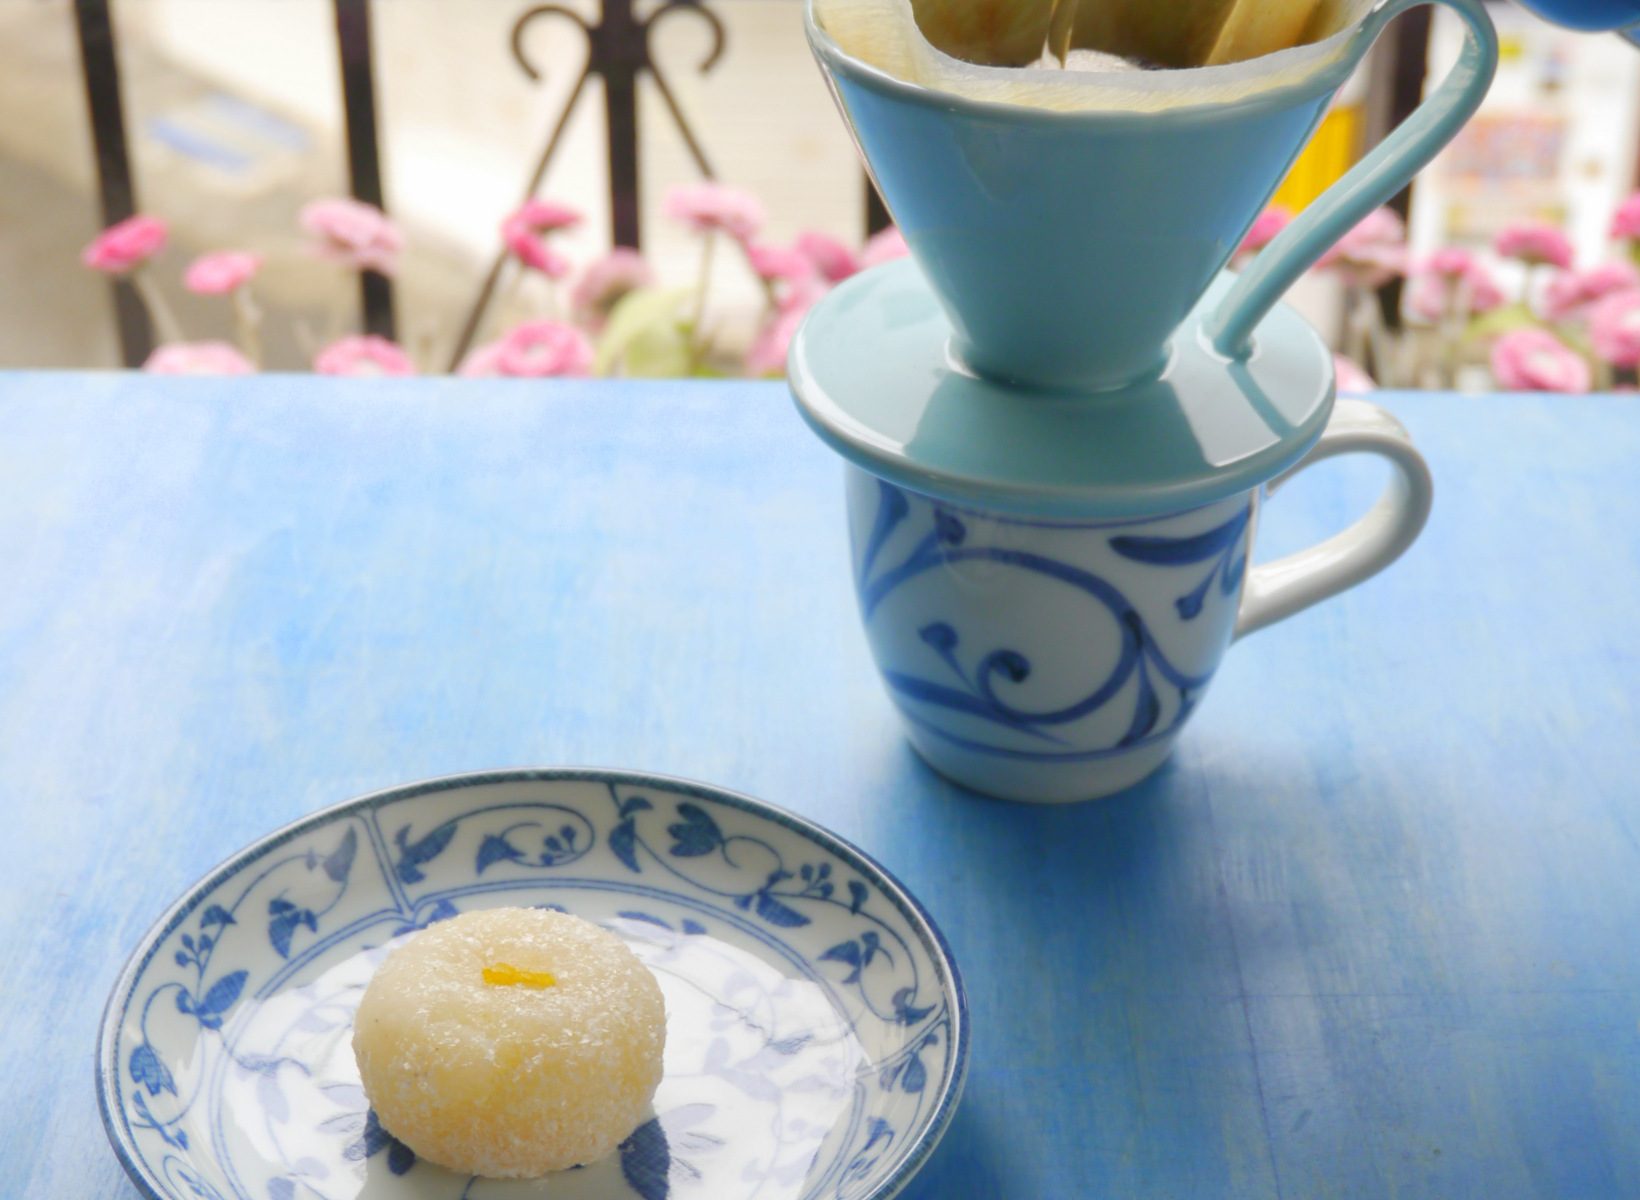 柚子餅(ゆず餅)とコーヒー